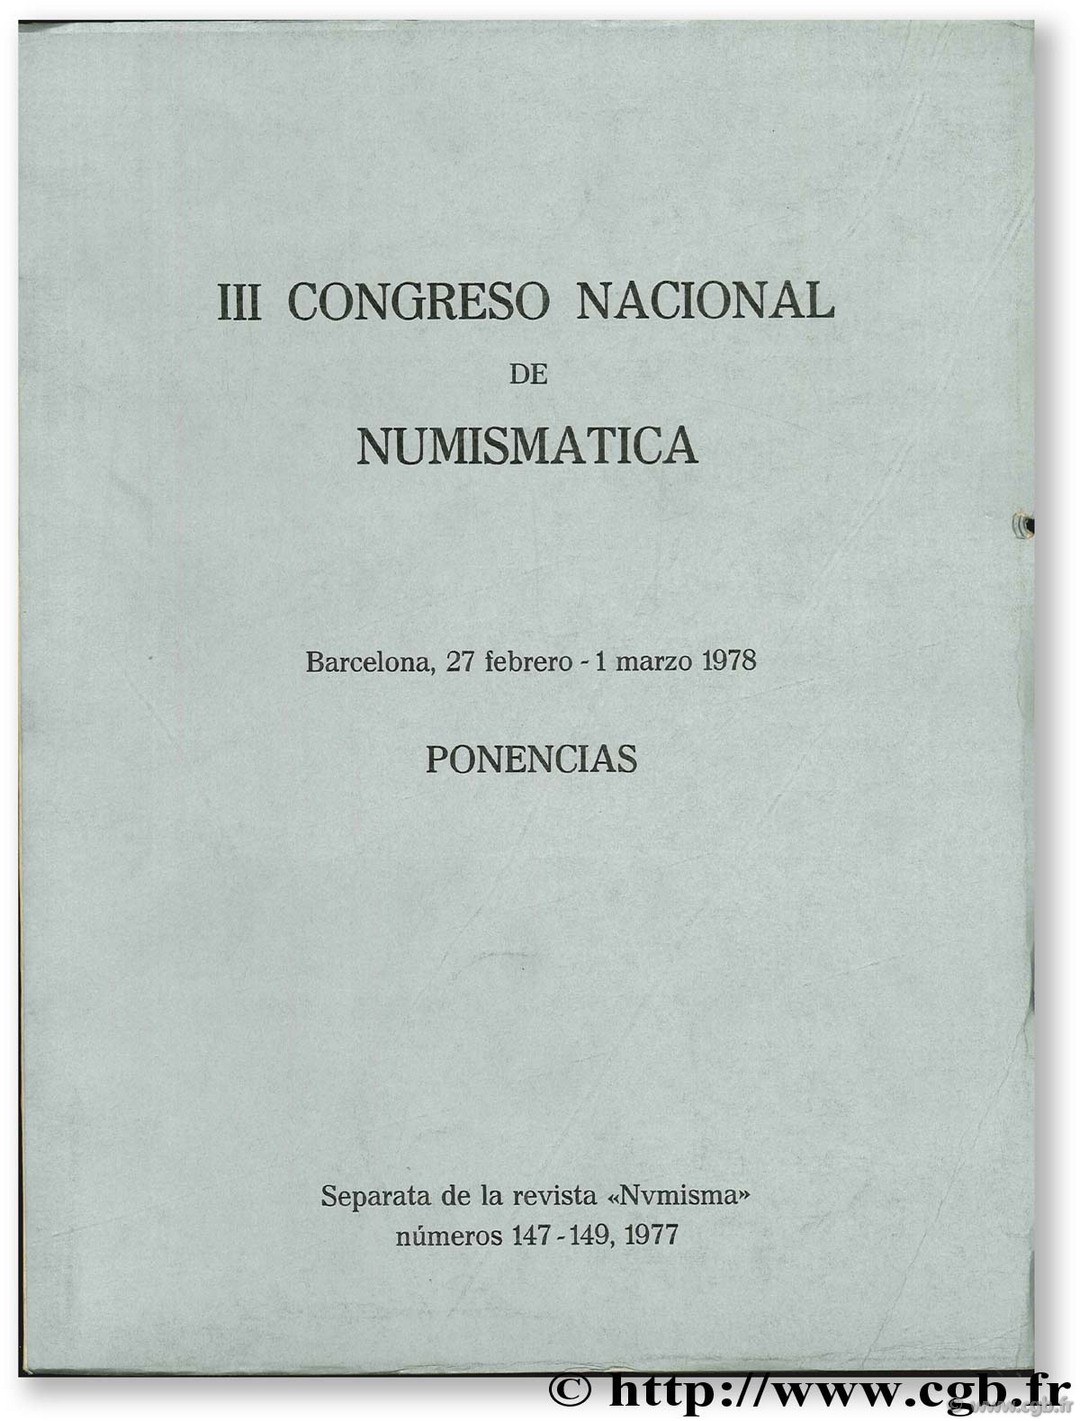 III Congreso Nacional de numismatica. Ponencias. Barcelona 27 febrero - 1 marzo 1978 